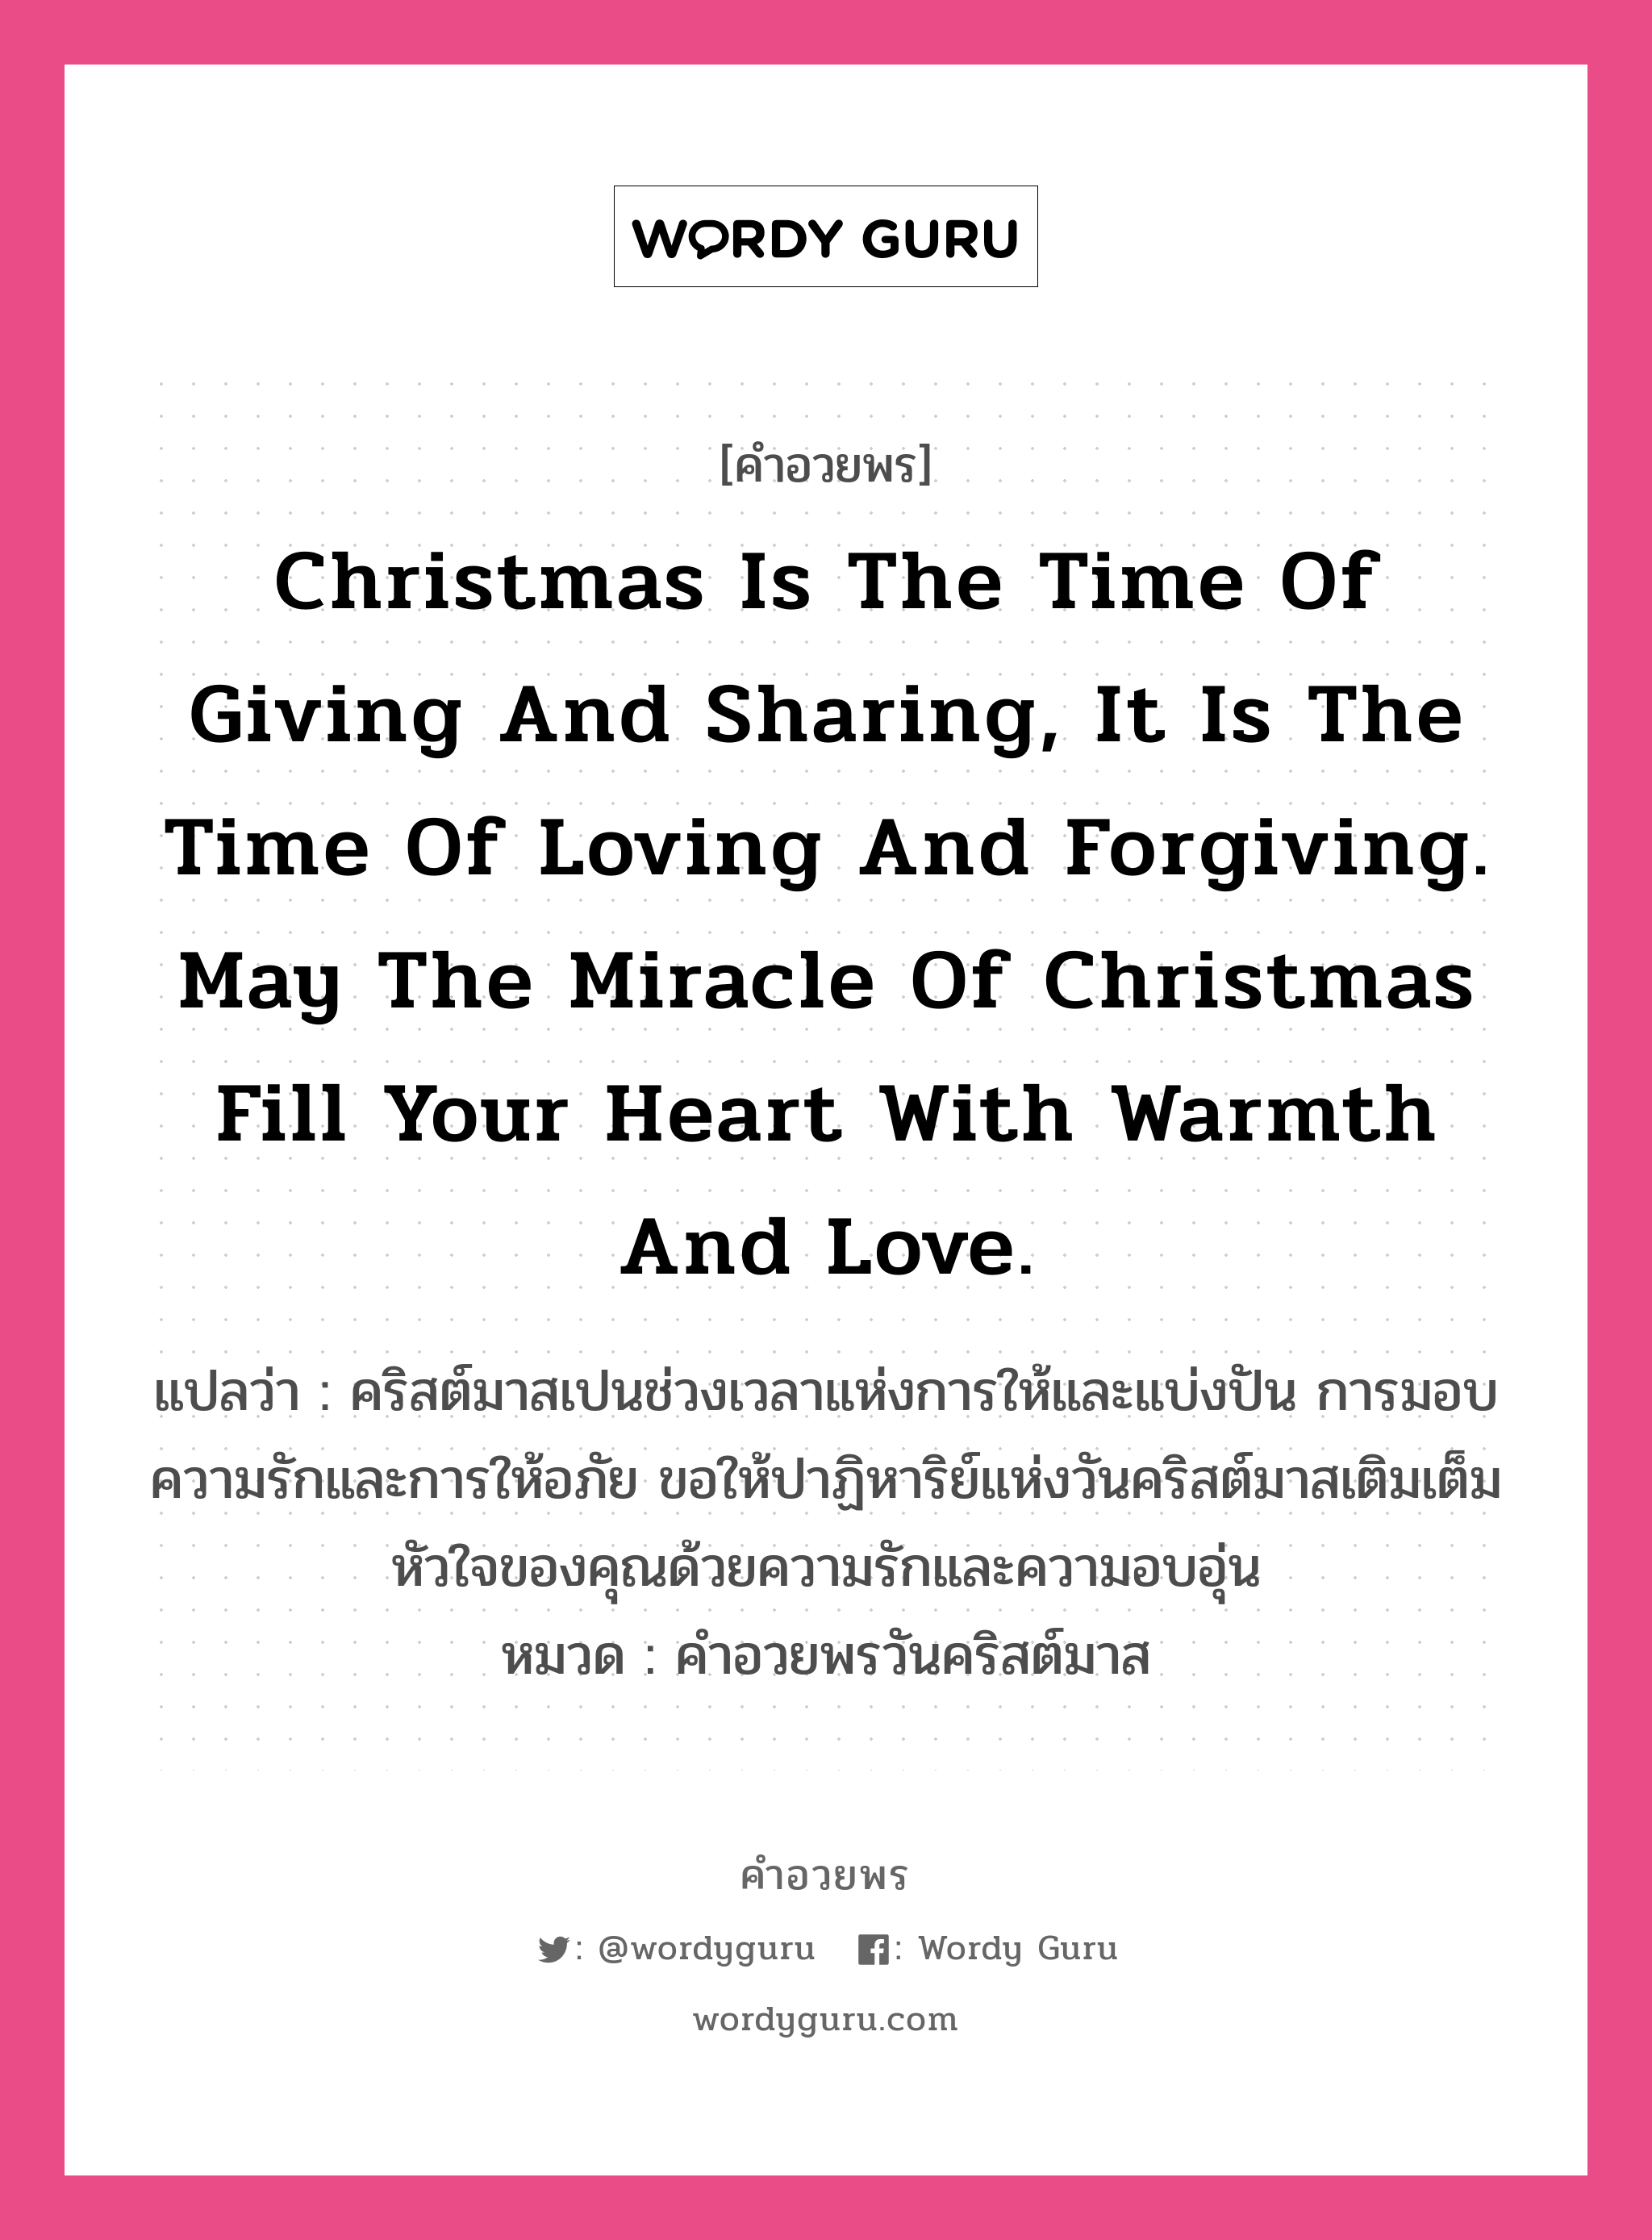 คำอวยพร Christmas is the time of giving and sharing, it is the time of loving and forgiving. May the miracle of Christmas fill your heart with warmth and love. คืออะไร?, แปลว่า คริสต์มาสเปนช่วงเวลาแห่งการให้และแบ่งปัน การมอบความรักและการให้อภัย ขอให้ปาฏิหาริย์แห่งวันคริสต์มาสเติมเต็มหัวใจของคุณด้วยความรักและความอบอุ่น หมวด คำอวยพรวันคริสต์มาส หมวด คำอวยพรวันคริสต์มาส